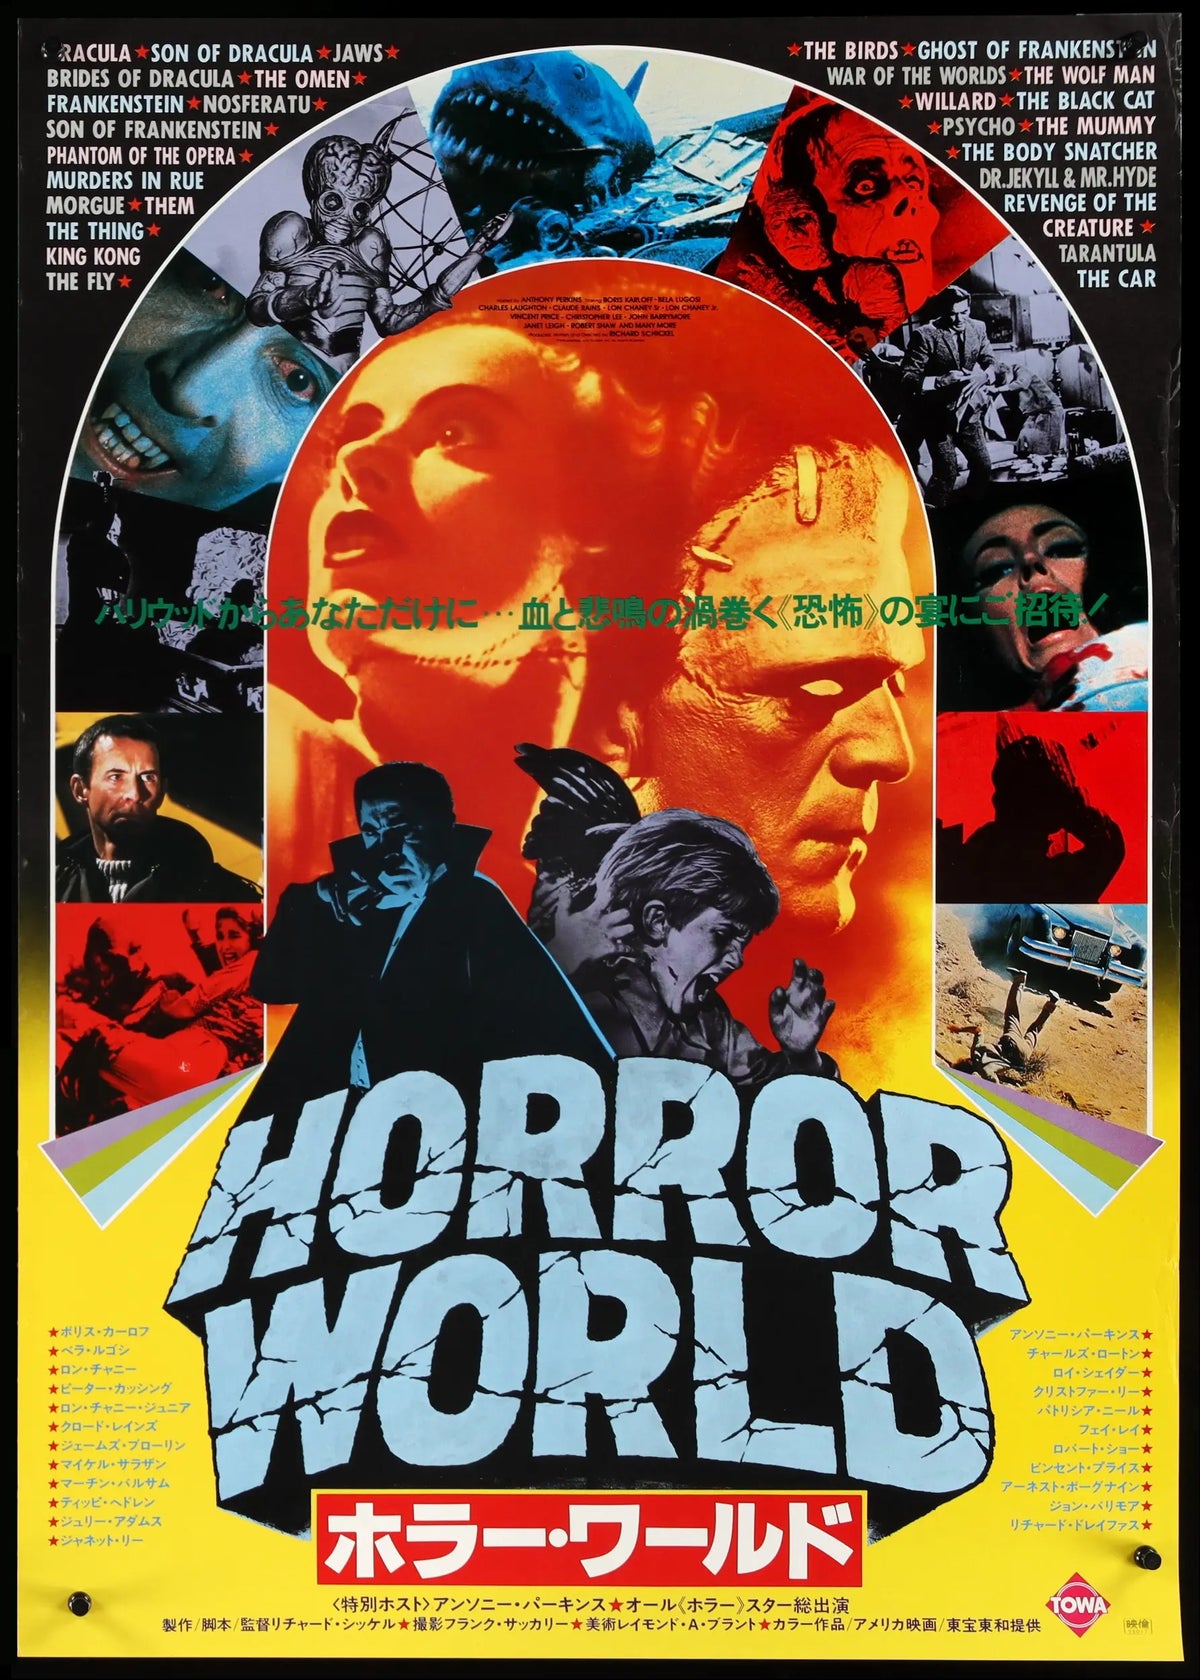 Horror Show (1979) original movie poster for sale at Original Film Art